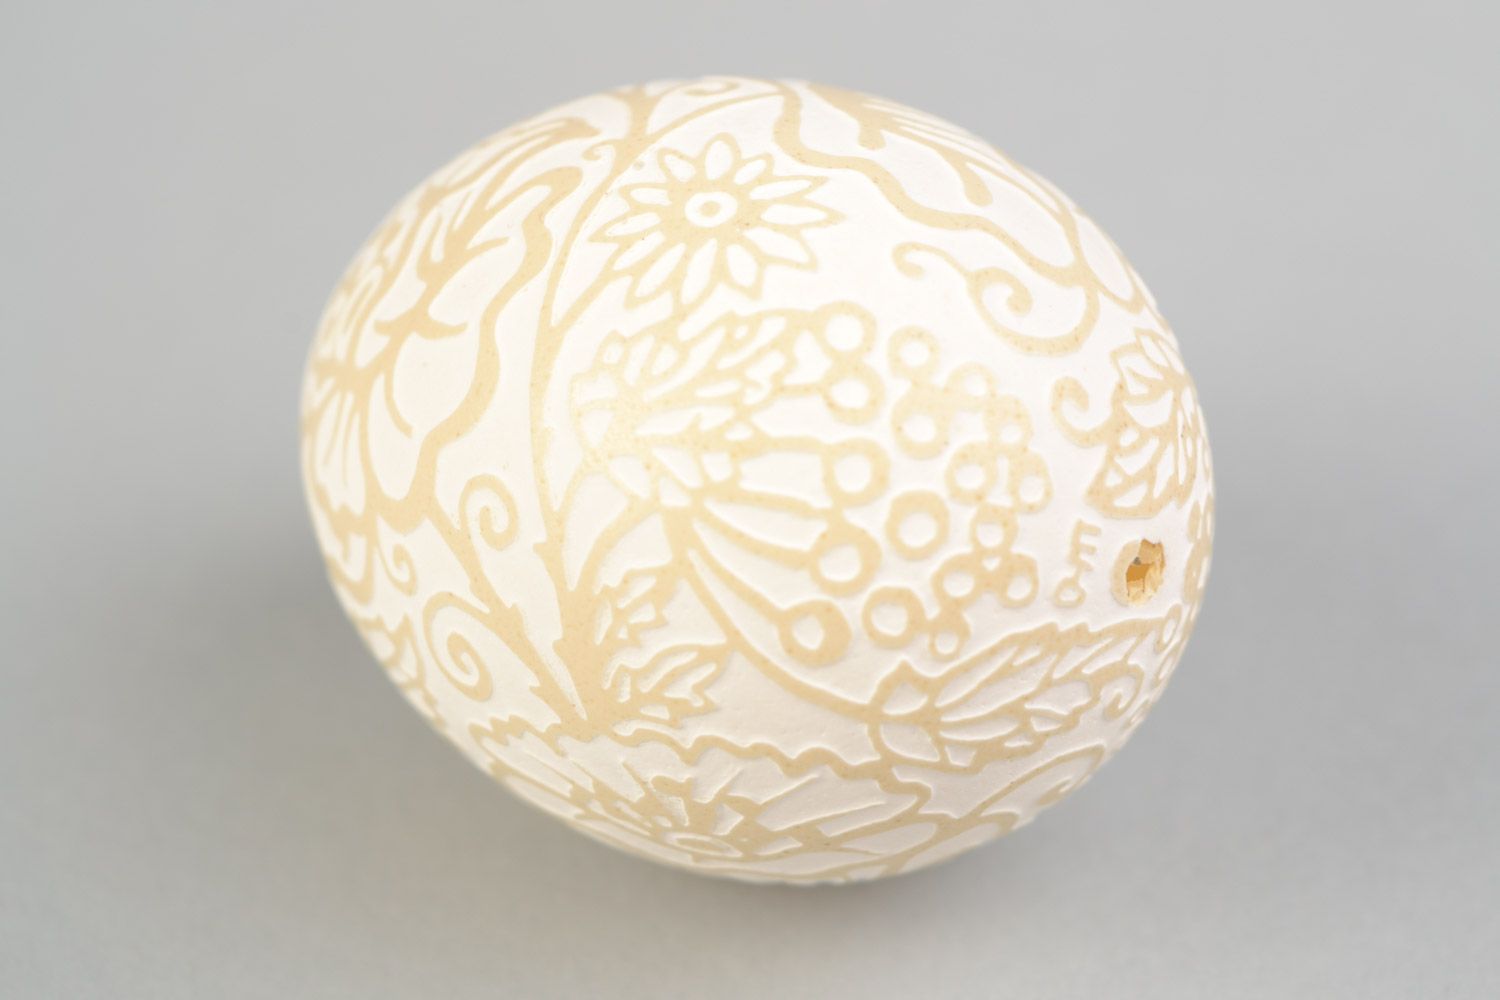 Handmade patterned Easter chicken egg for decor vinegar etching photo 5